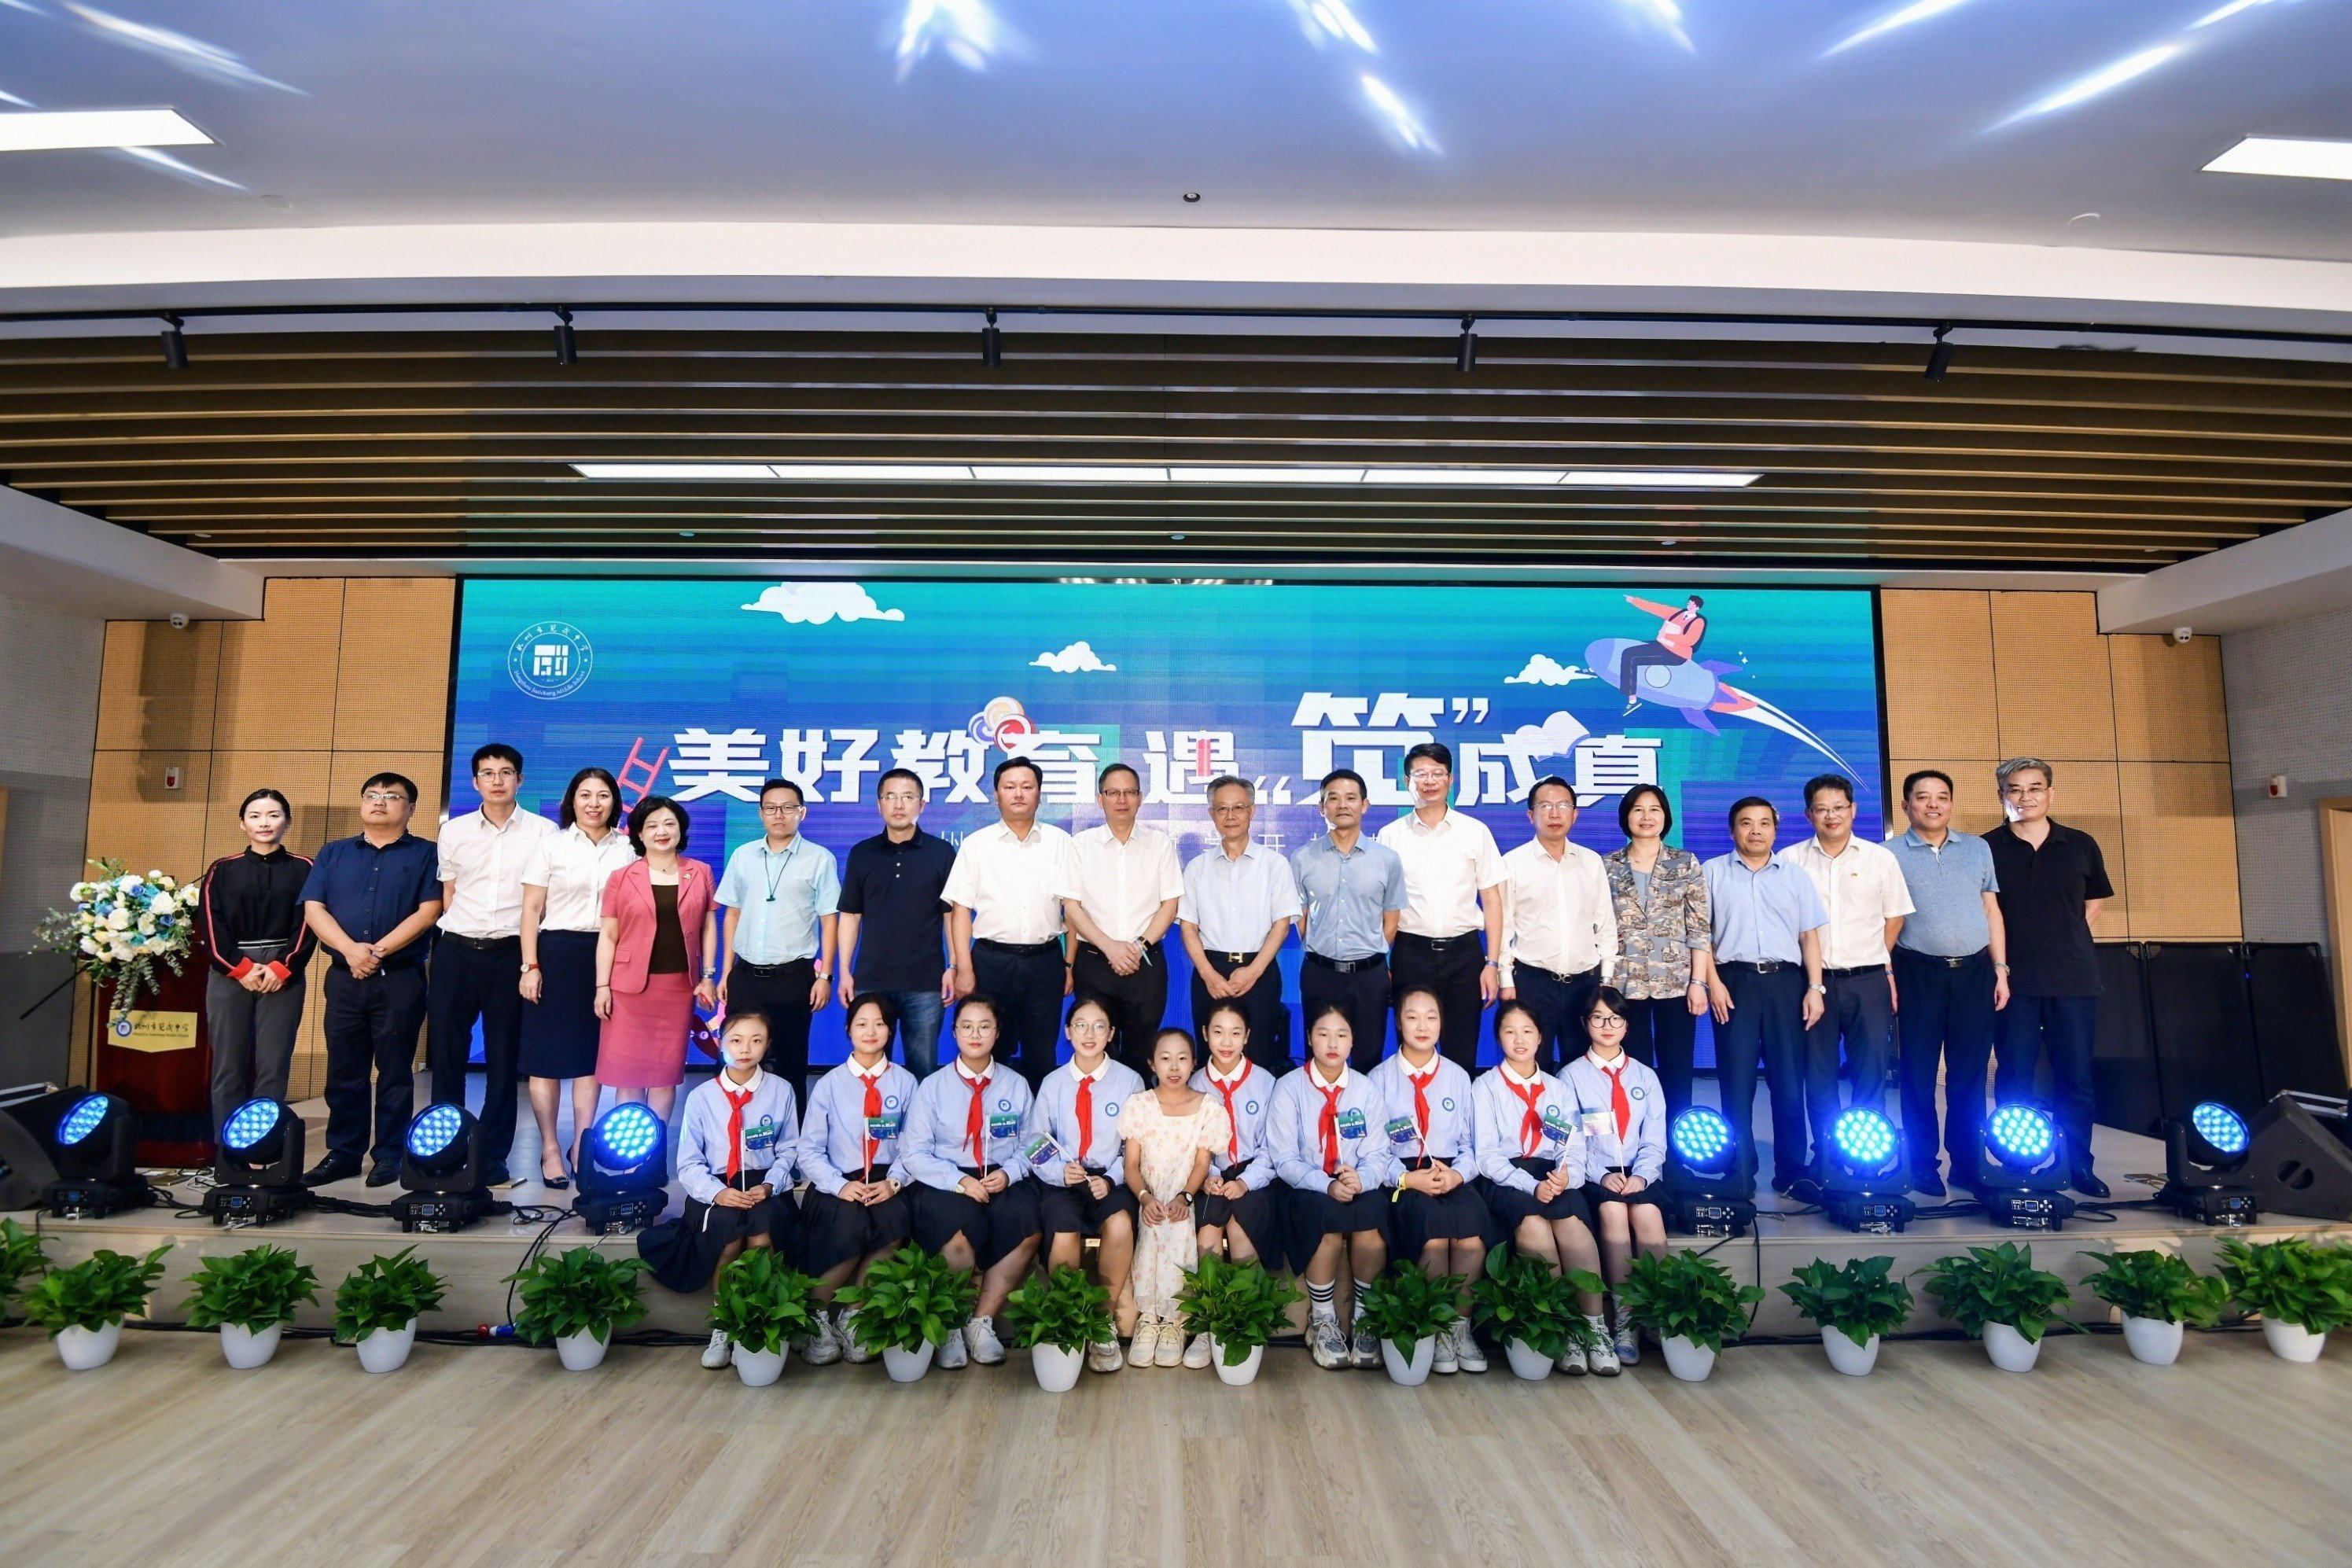 美好教育遇“笕”成真  杭州市笕成中学举办开校典礼